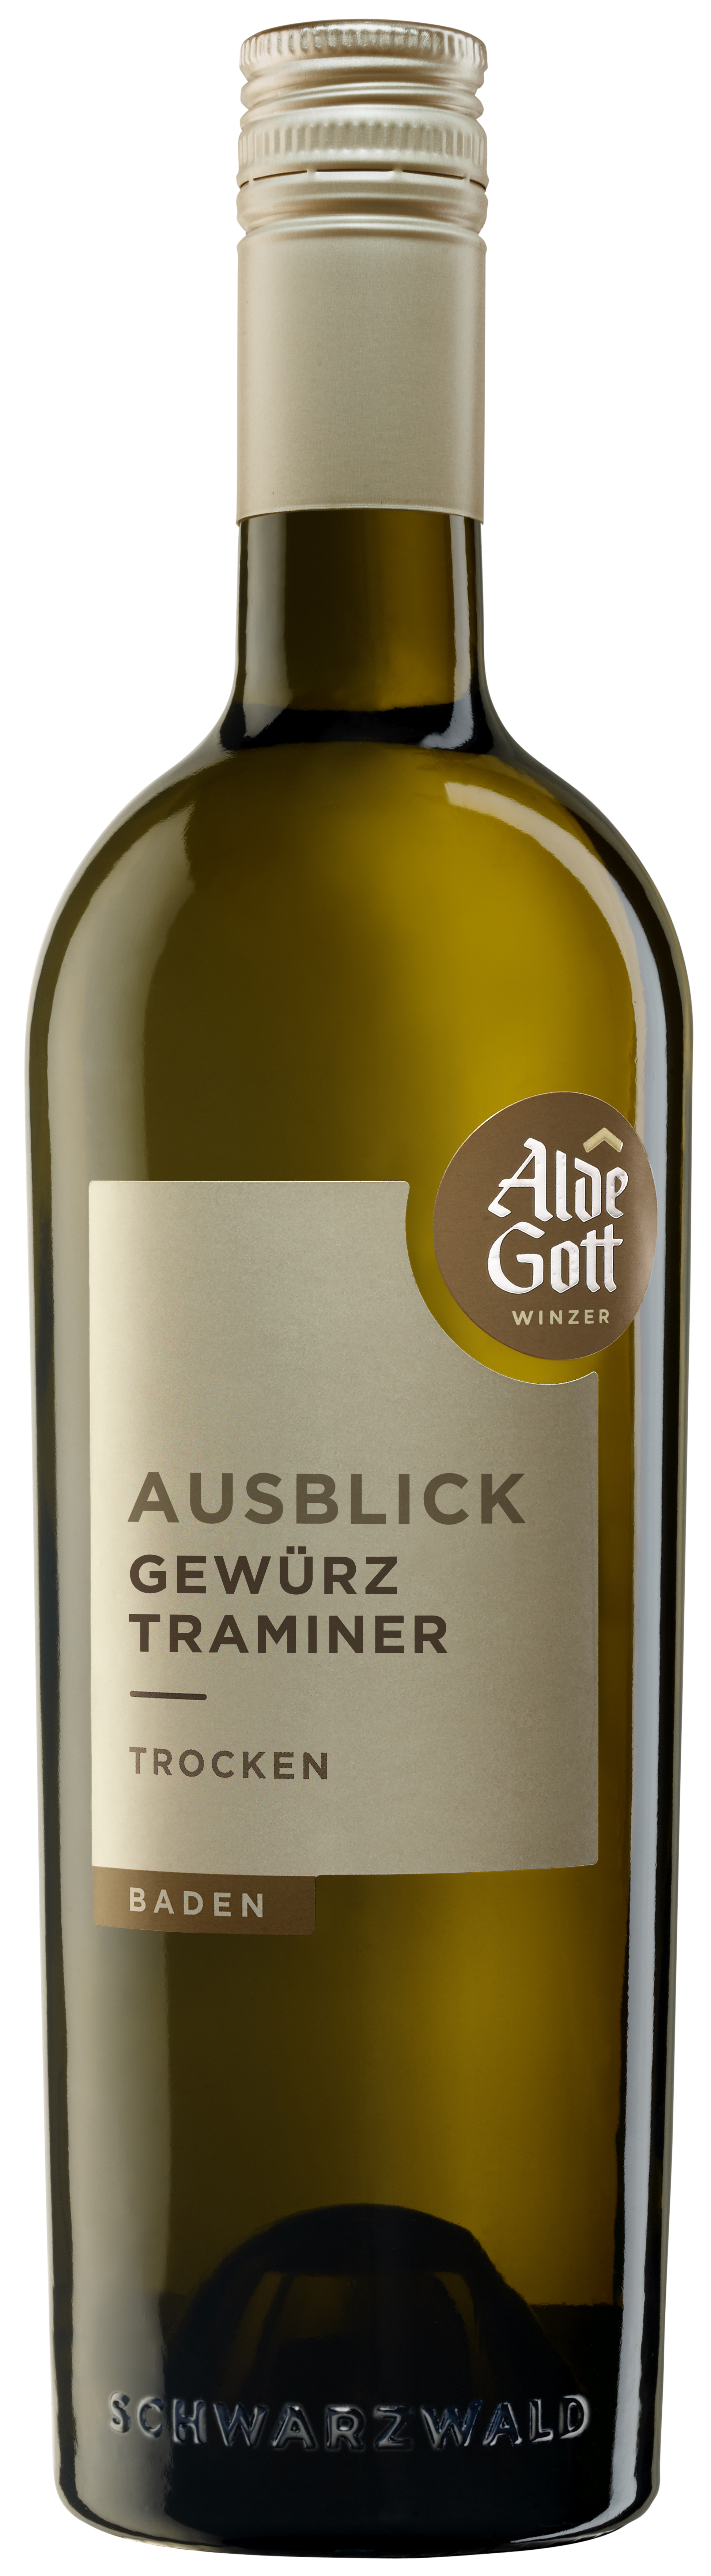 Sasbachwaldener ALDE GOTT  AUSBLICK  Gewürztraminer Qualitätswein trocken 